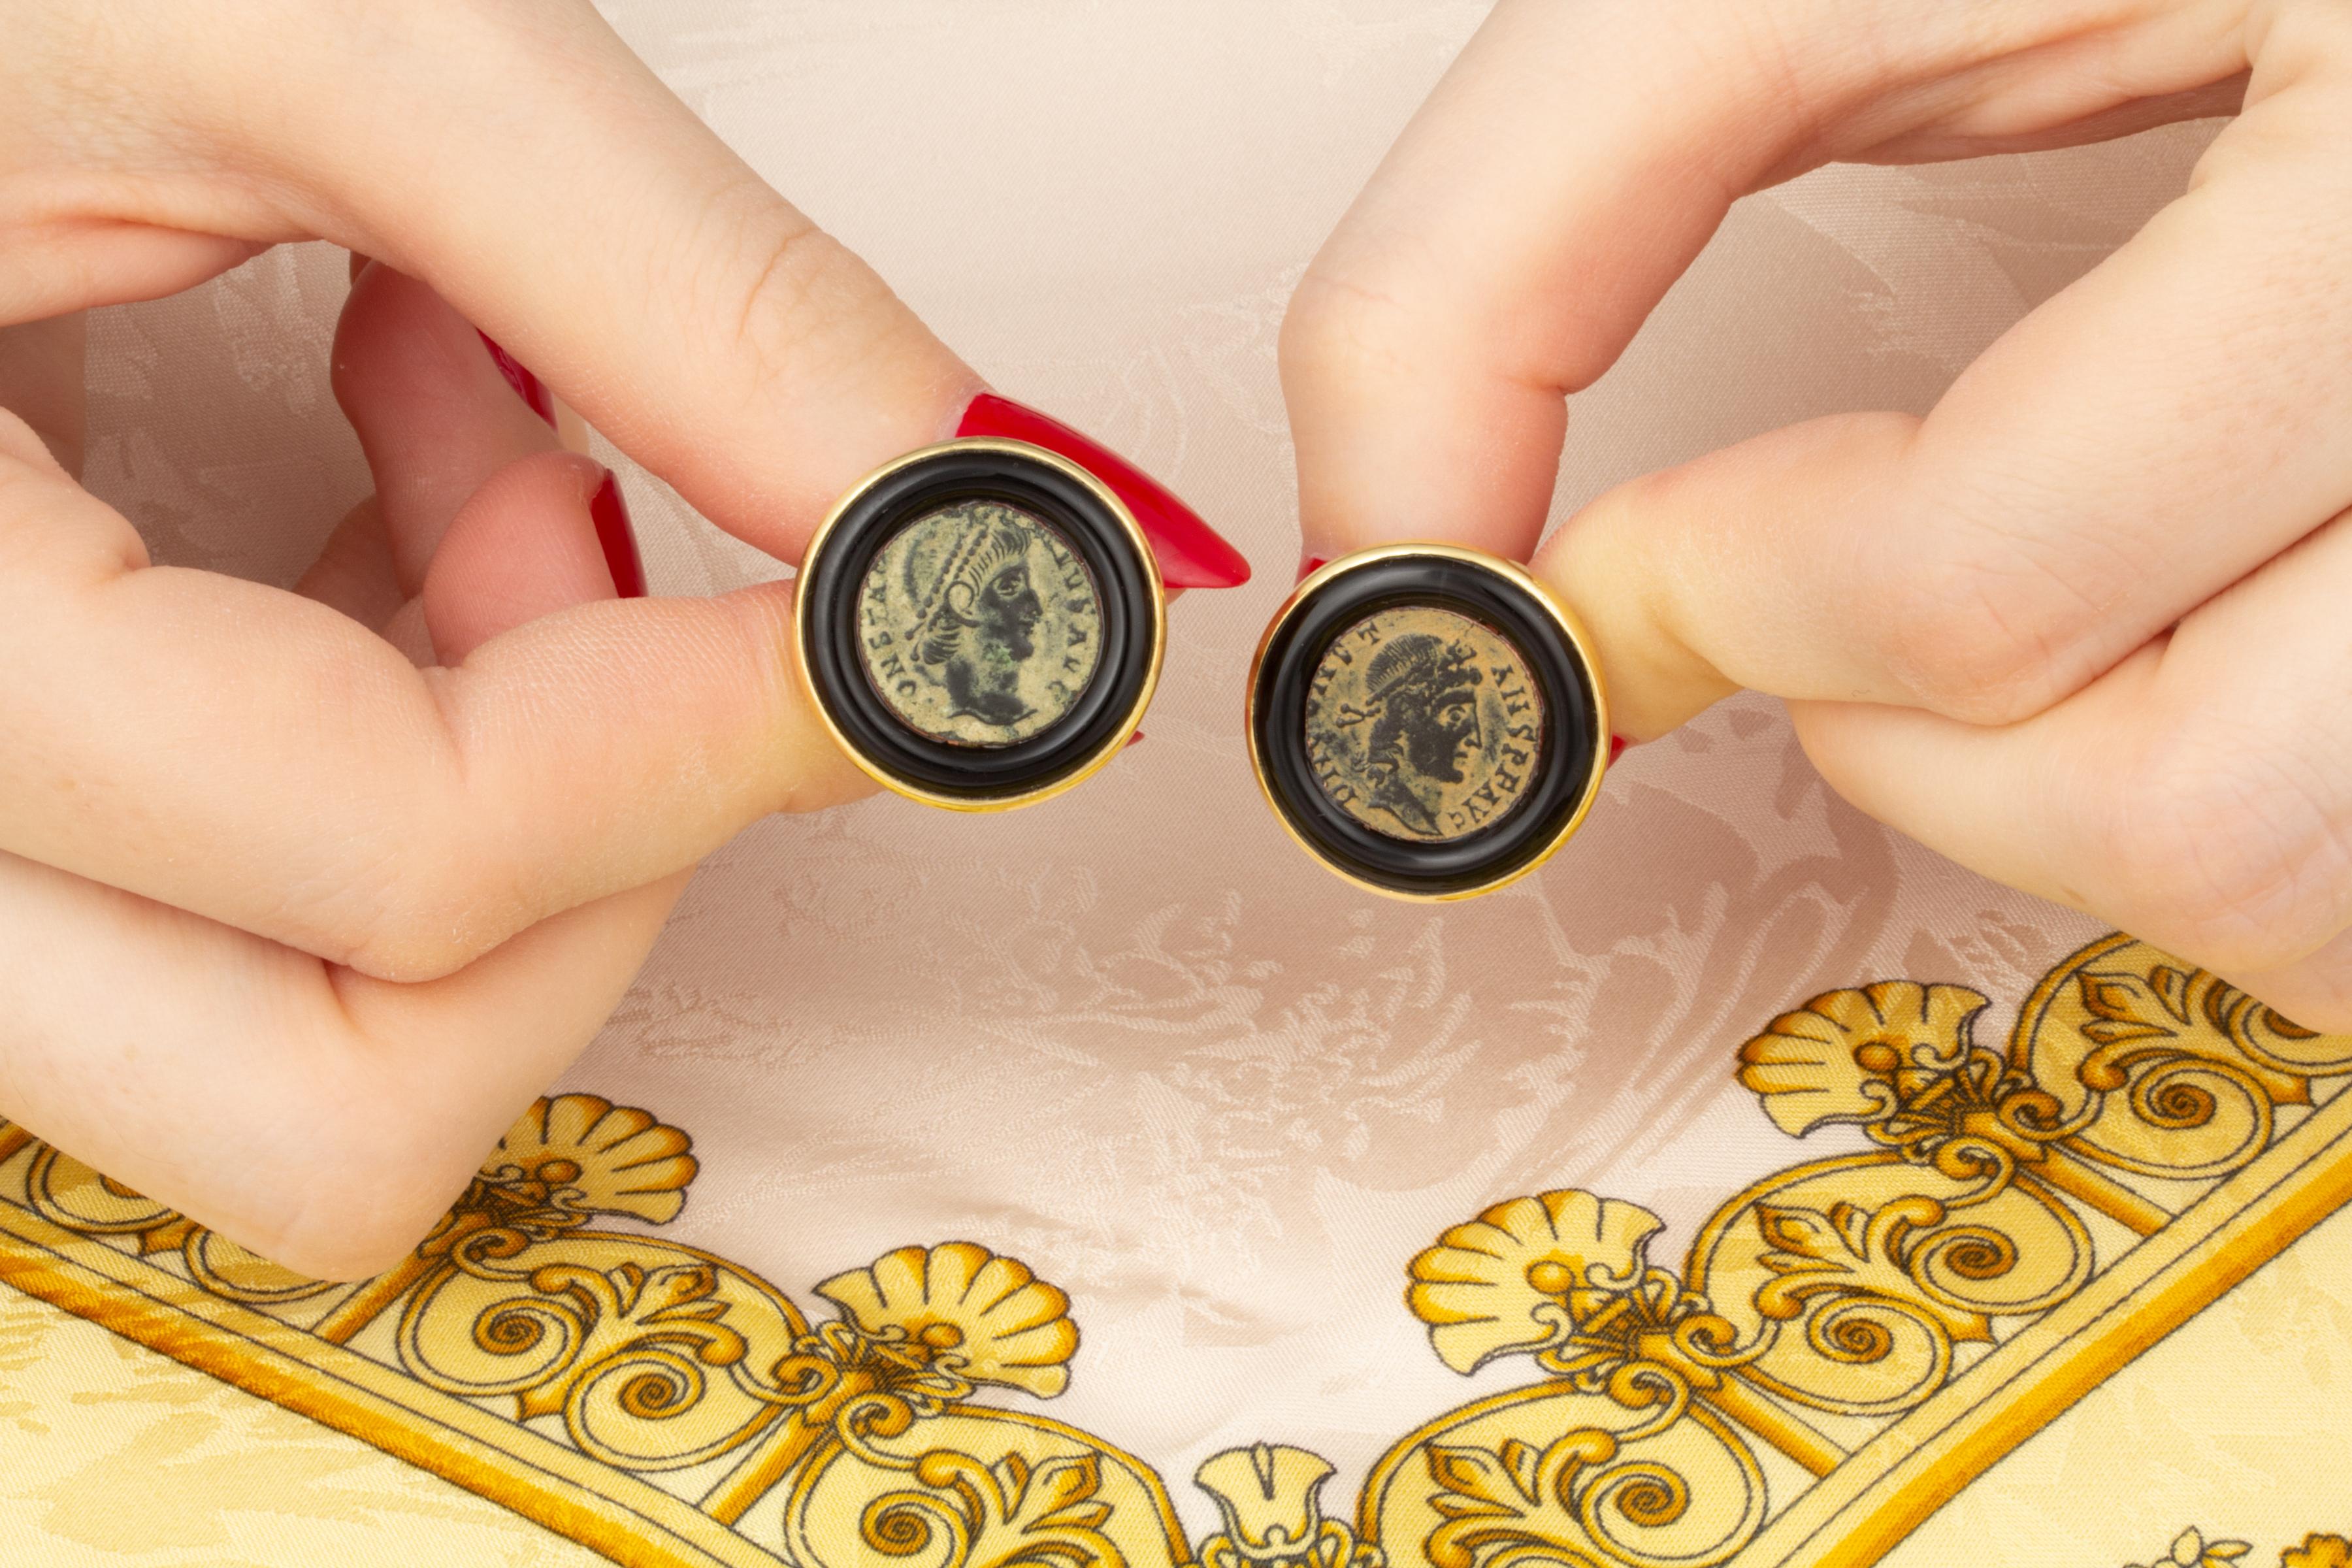 Les boutons de manchette en cuivre antique sont sertis de jadéite noire. 
La paire est fabriquée à la main dans notre propre atelier de Naples, en Italie, par le maestro Giuseppe, d'après un design original d'Ella Gafter.
Les boutons de manchette